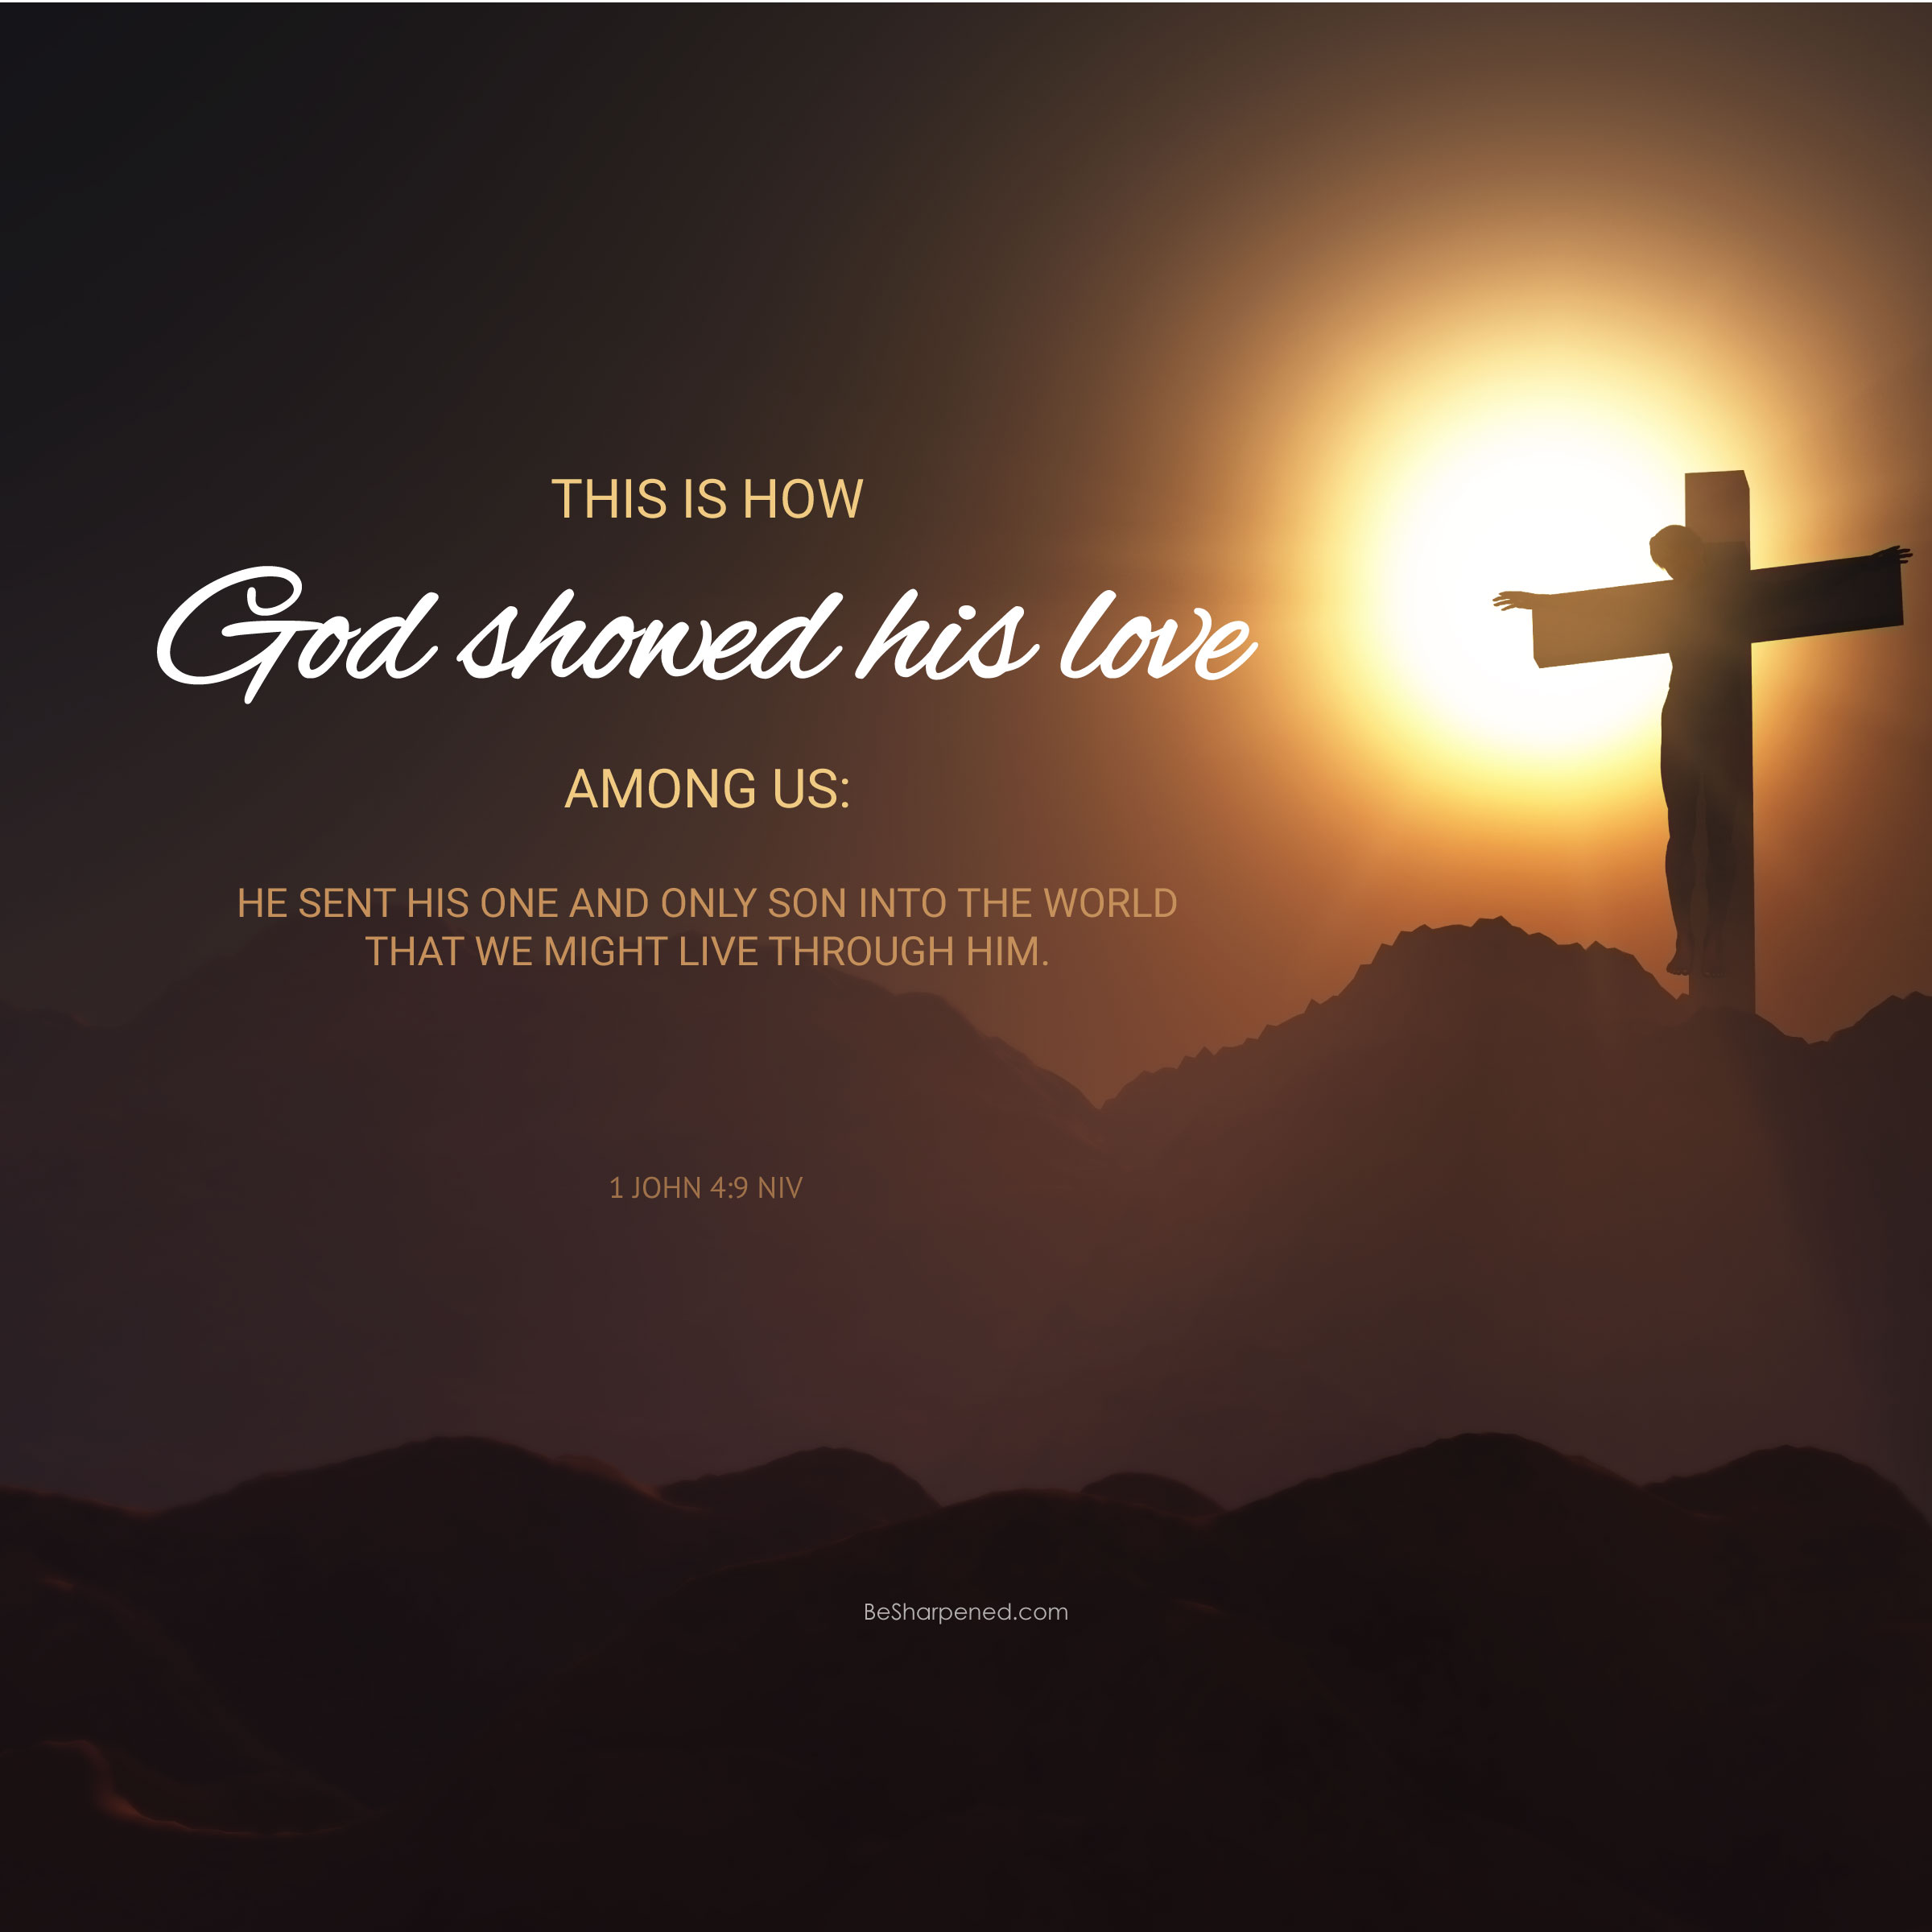 1 john 4:9 - Love is Showed